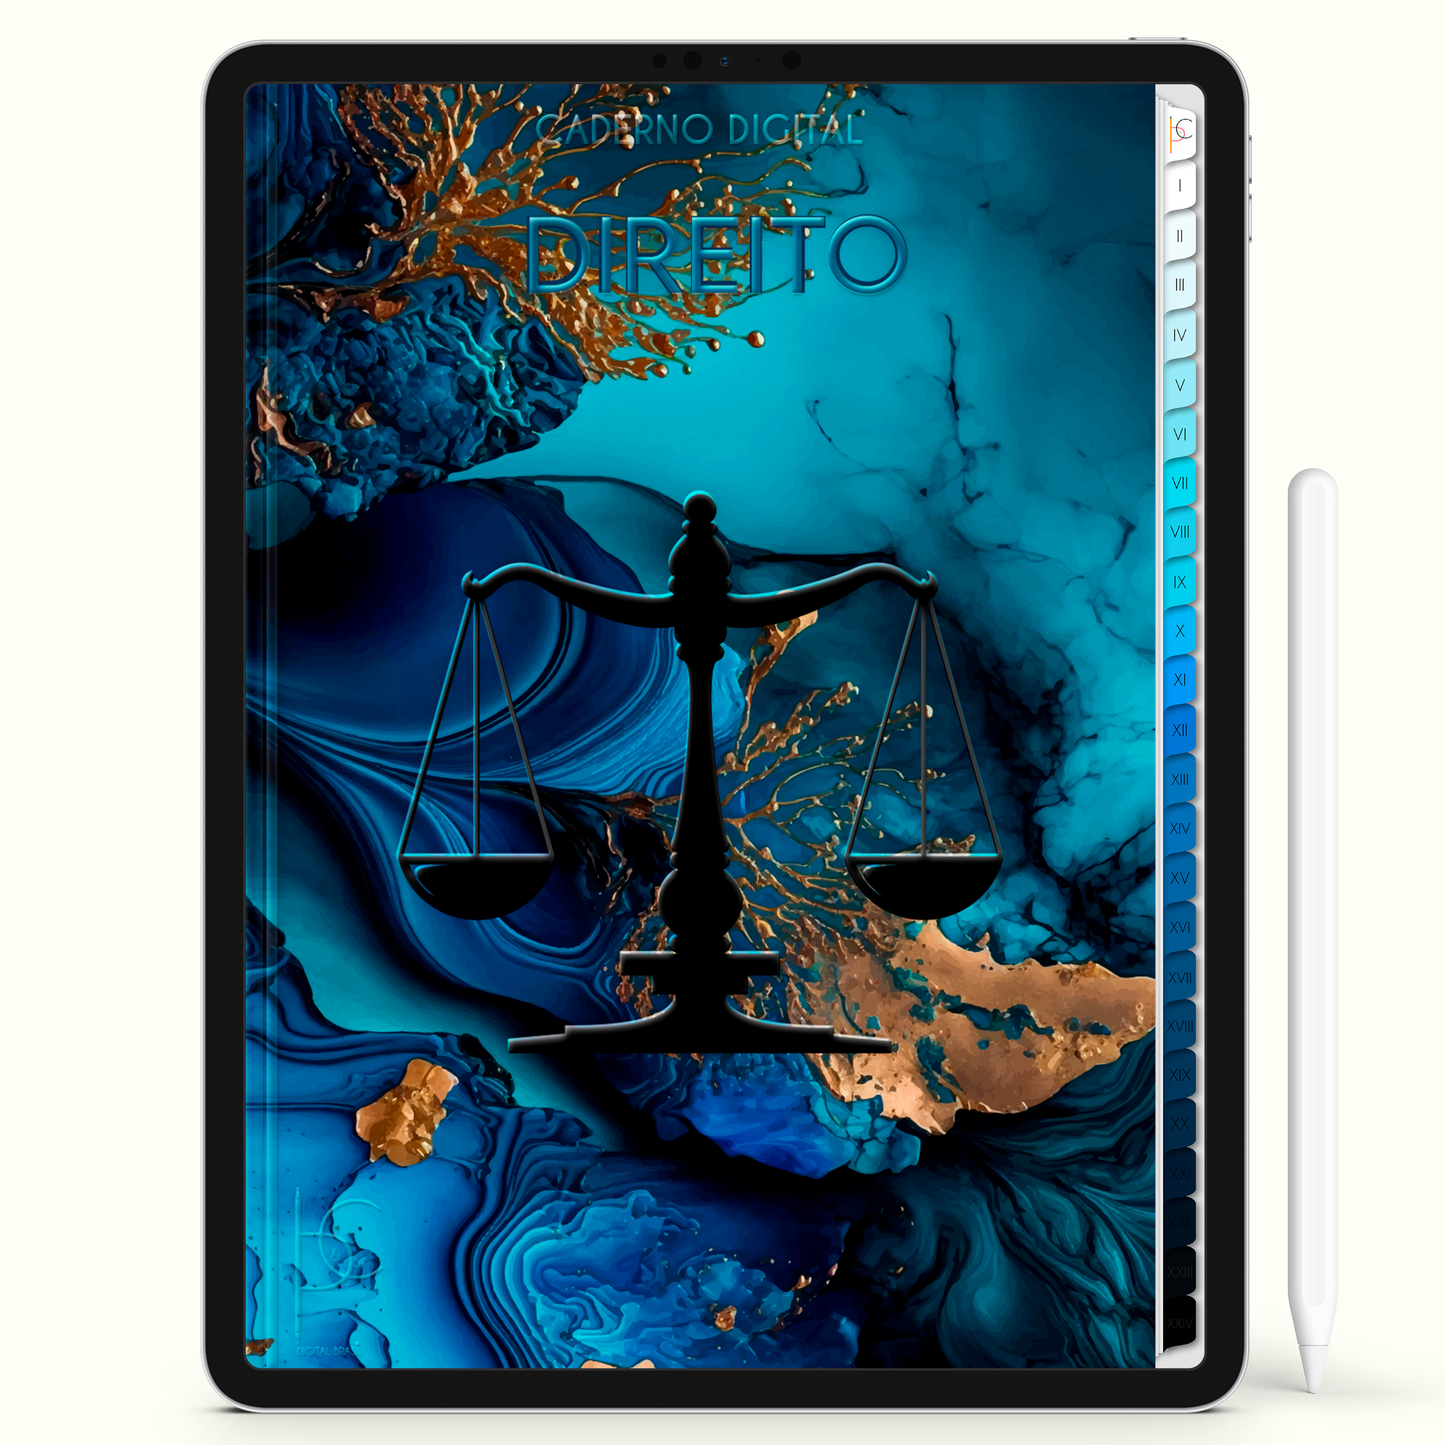 Caderno Digital Blue Direito Sapphire 24 Matérias • Para iPad e Tablet Android • Download instantâneo • Sustentável